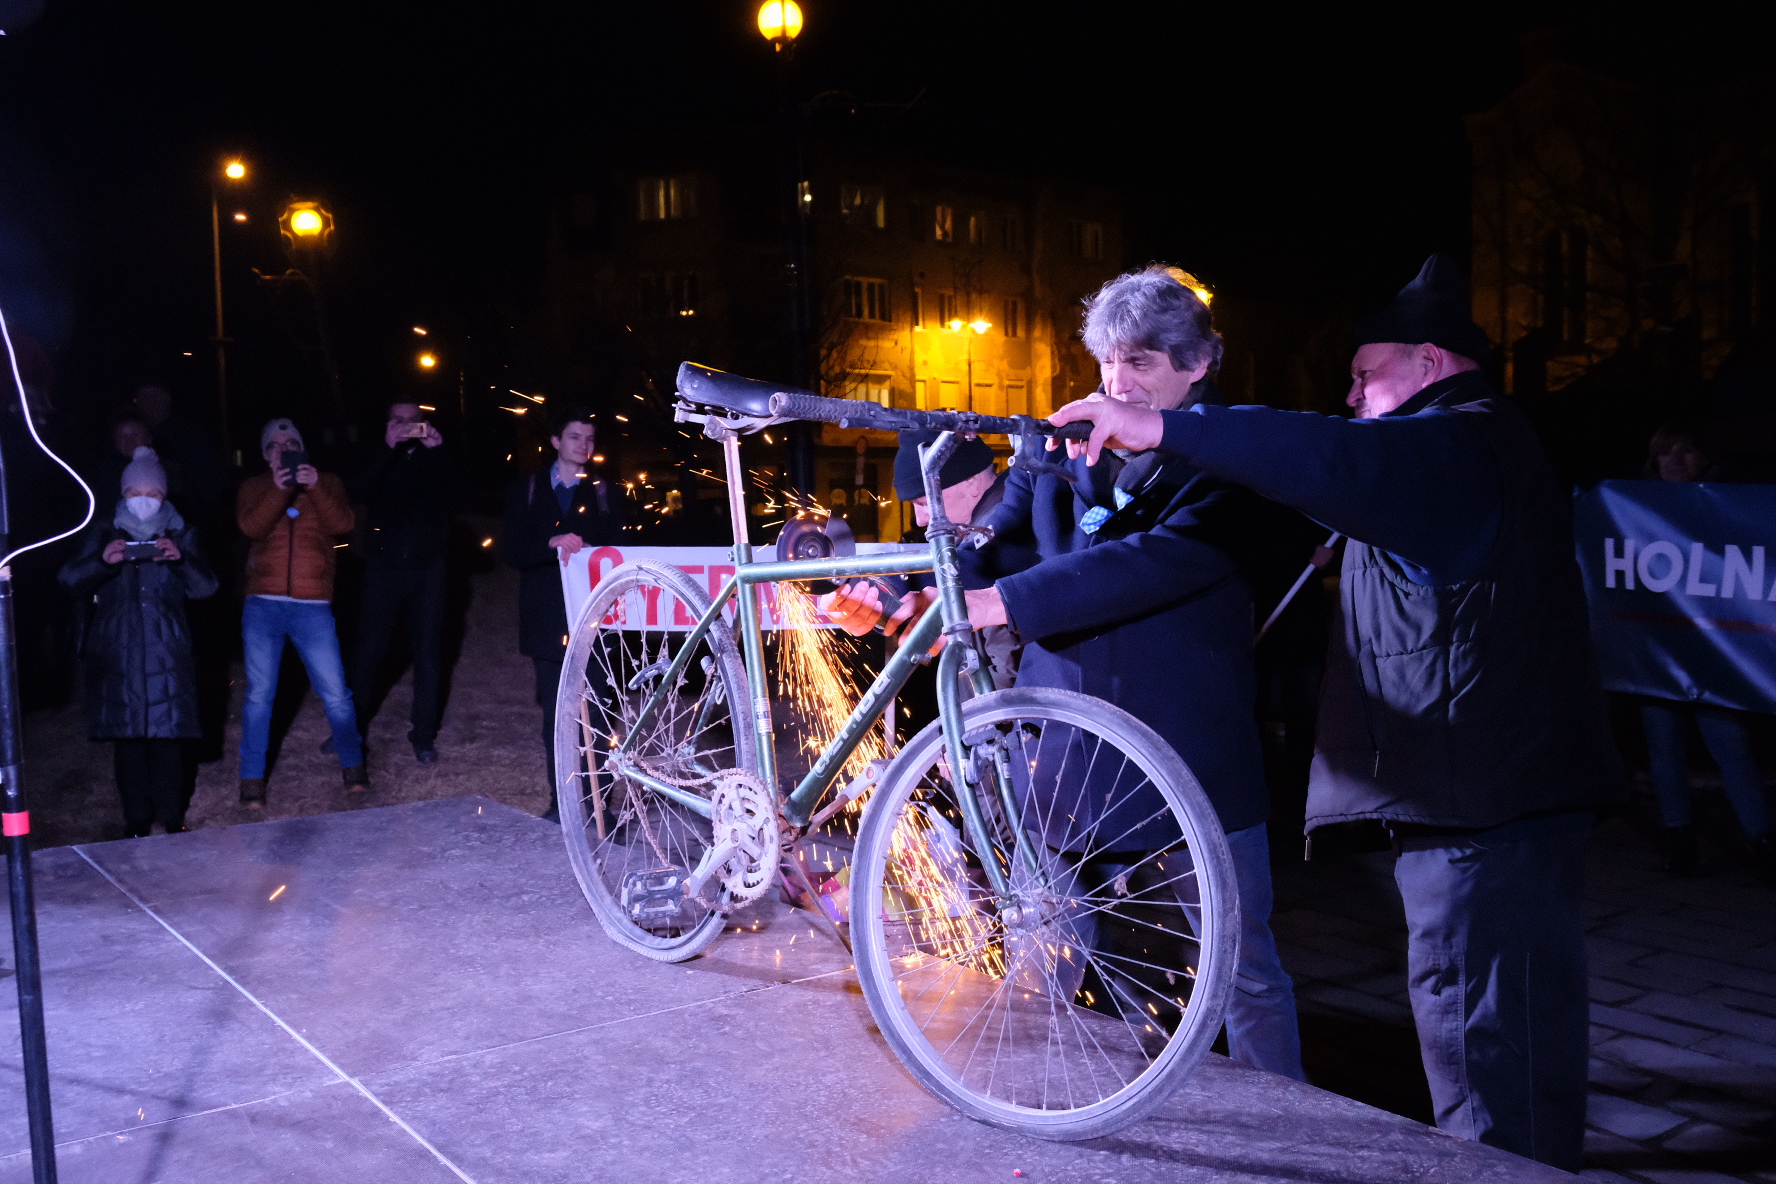 Annyira elegük van a pedagógusoknak, hogy Miskolcon szétflexeltek egy biciklit